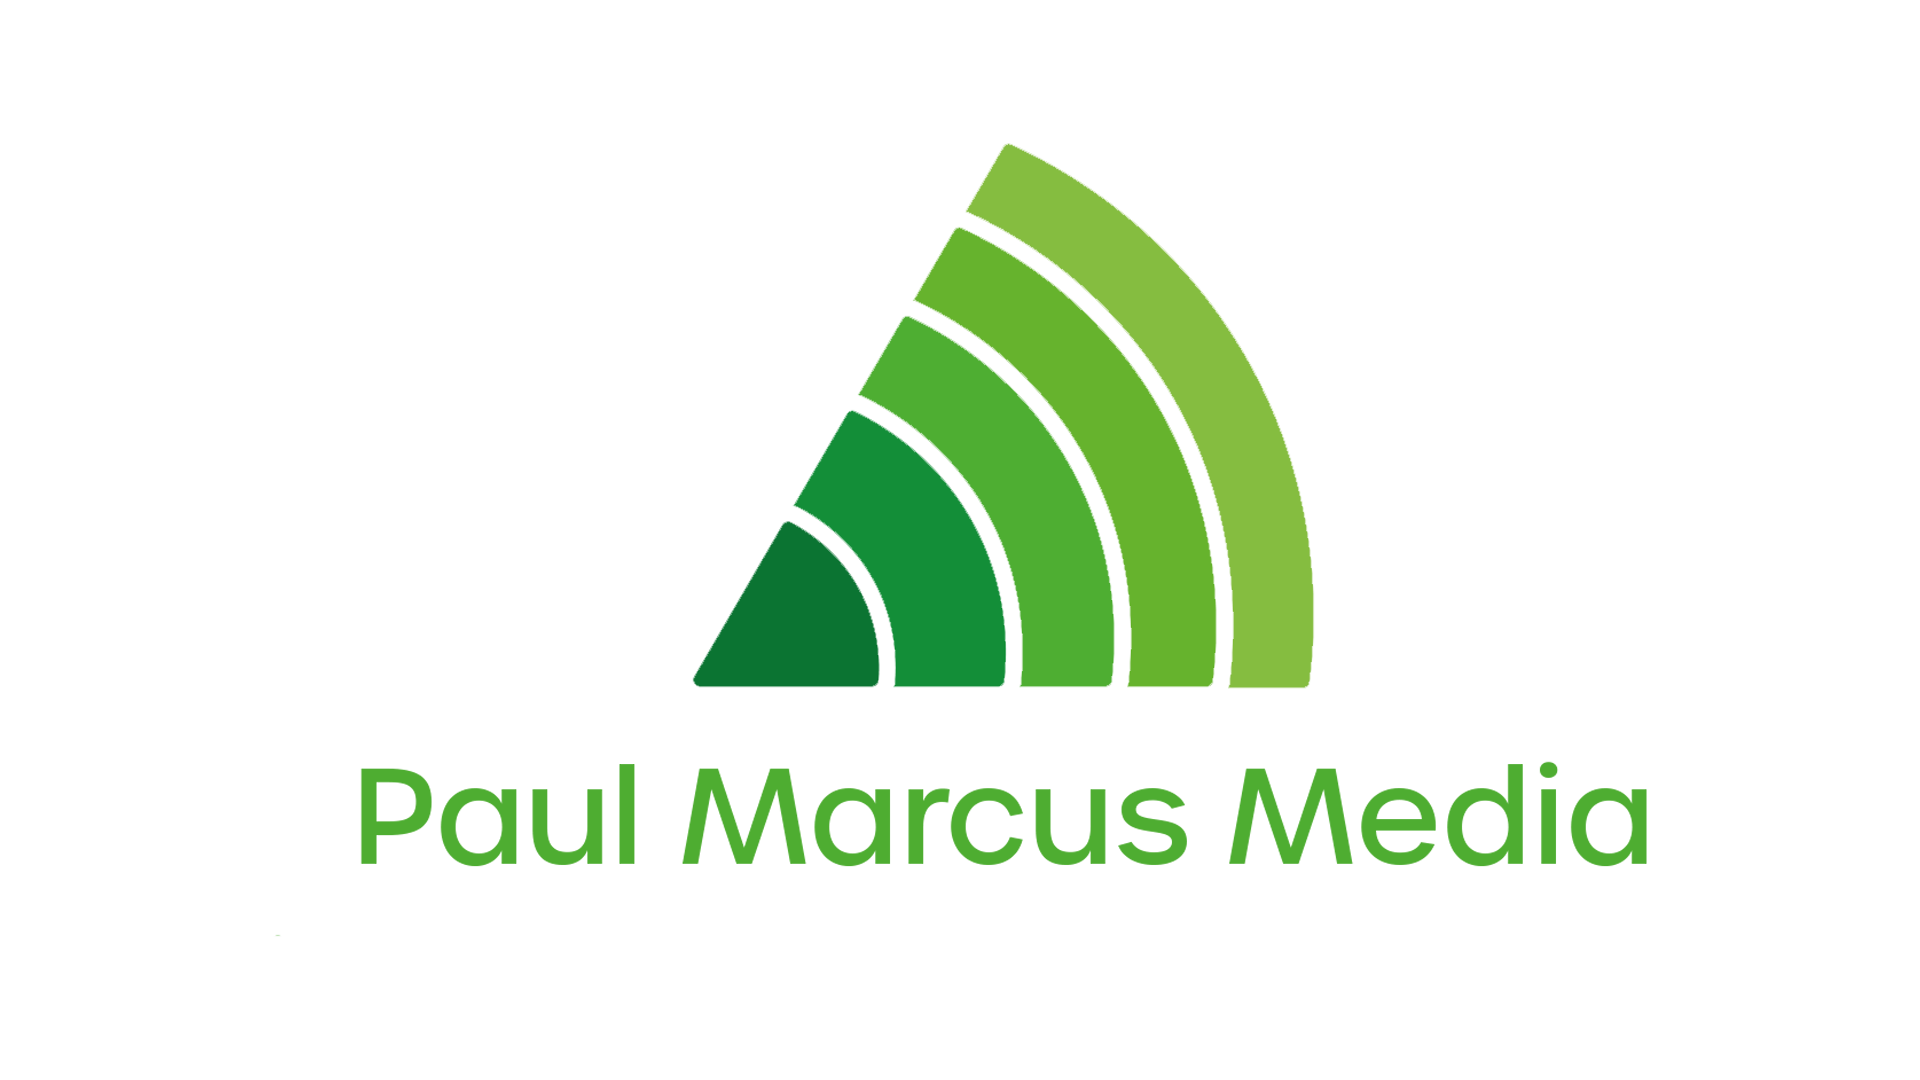 Paul Marcus